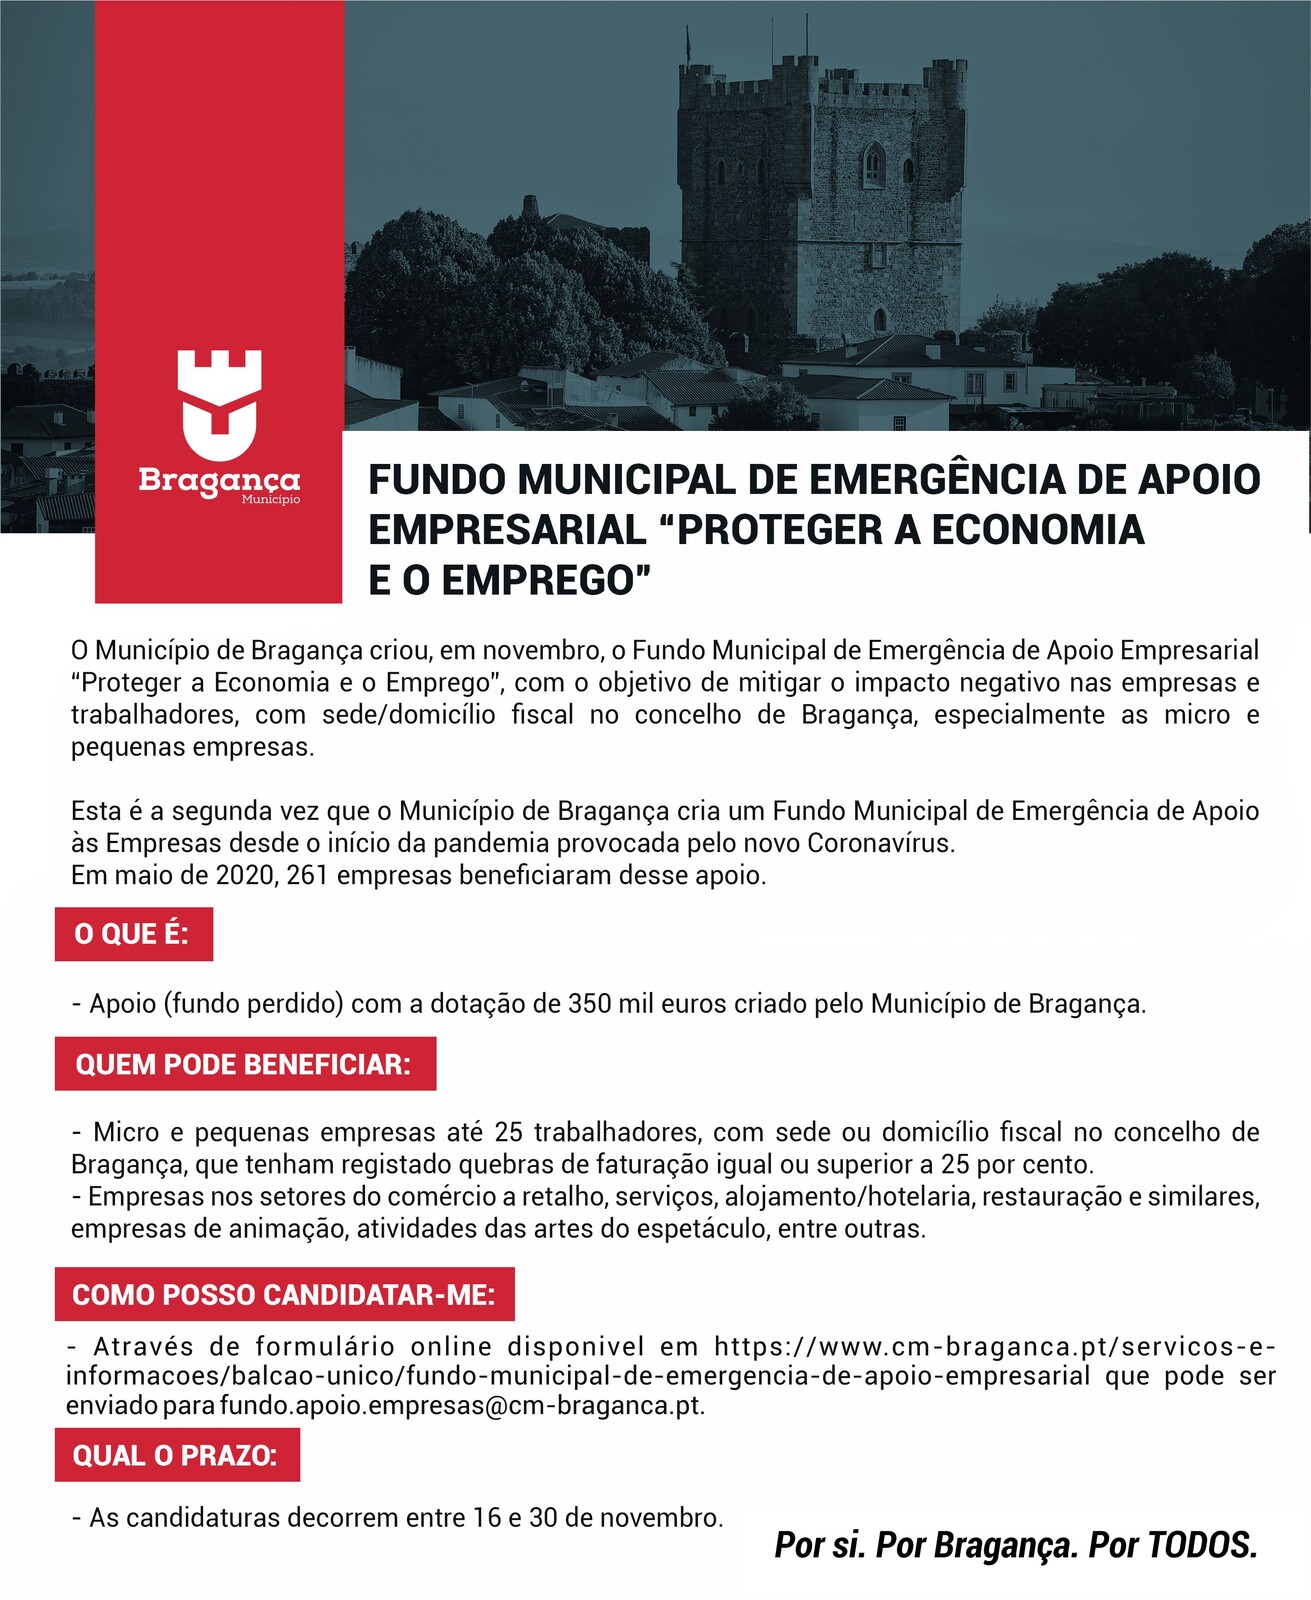 abertas_candidaturas_ao_fundo_municipal_de_emergencia_de_apoio_empresarial